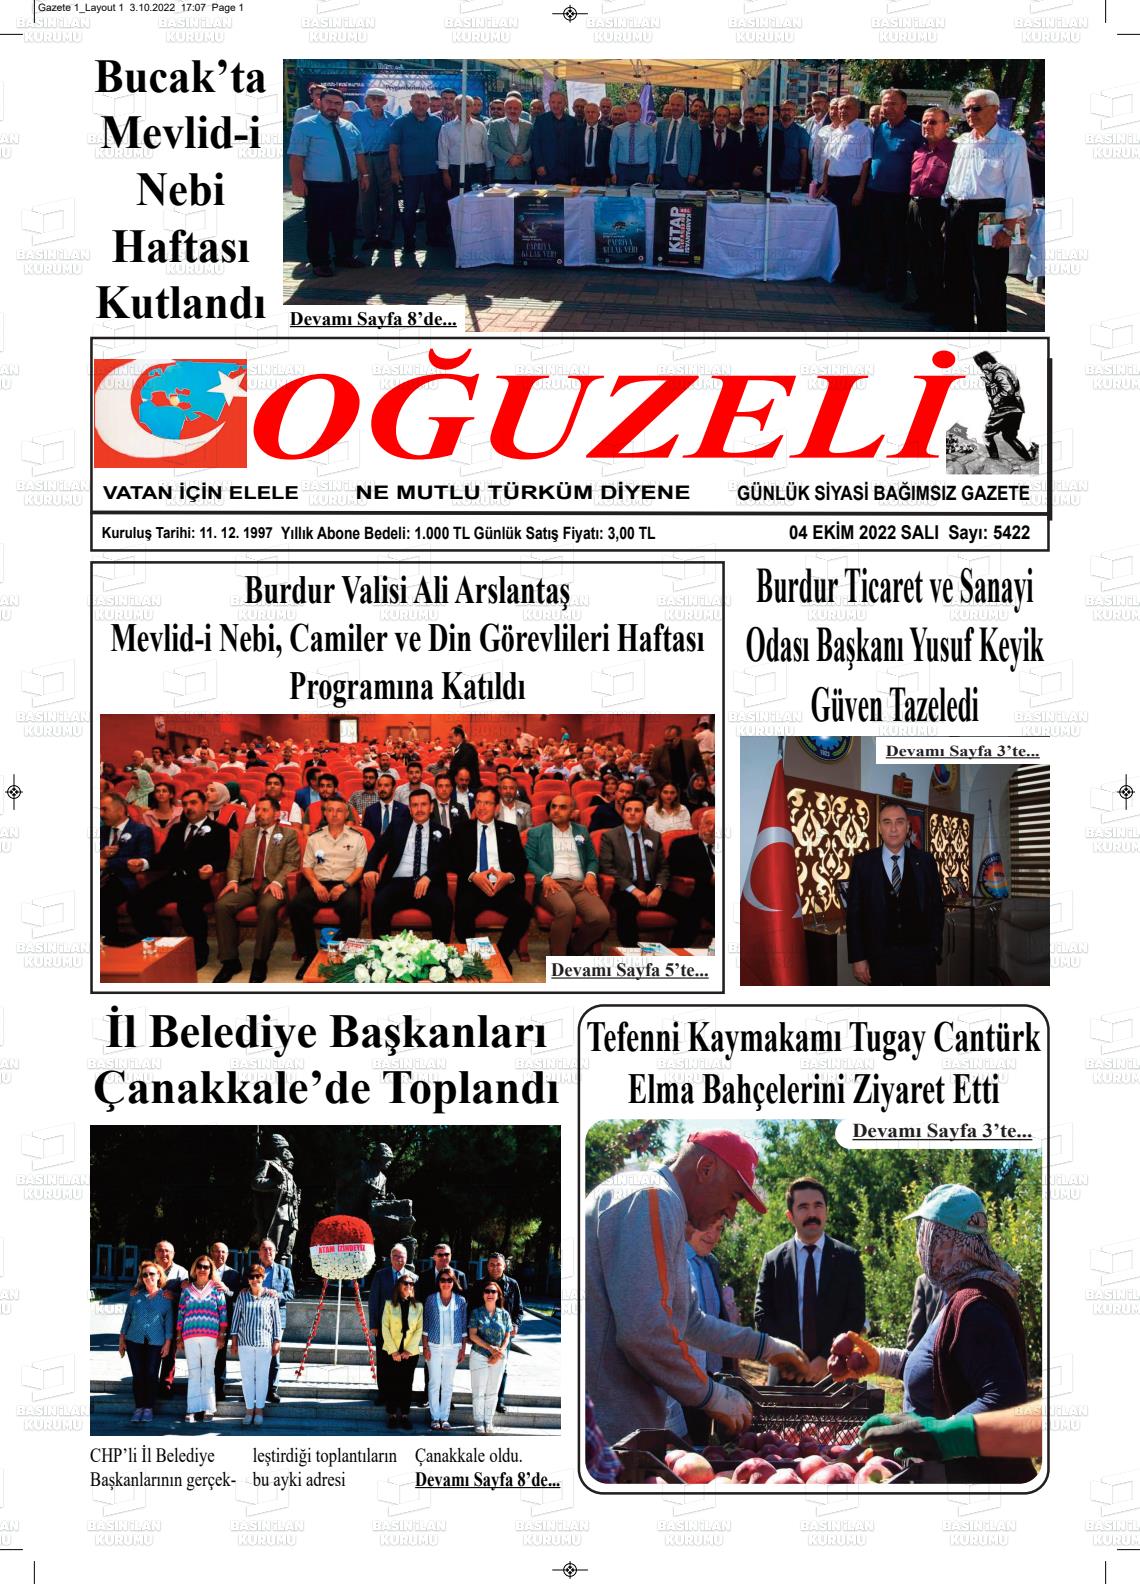 04 Ekim 2022 Oğuzeli Gazete Manşeti